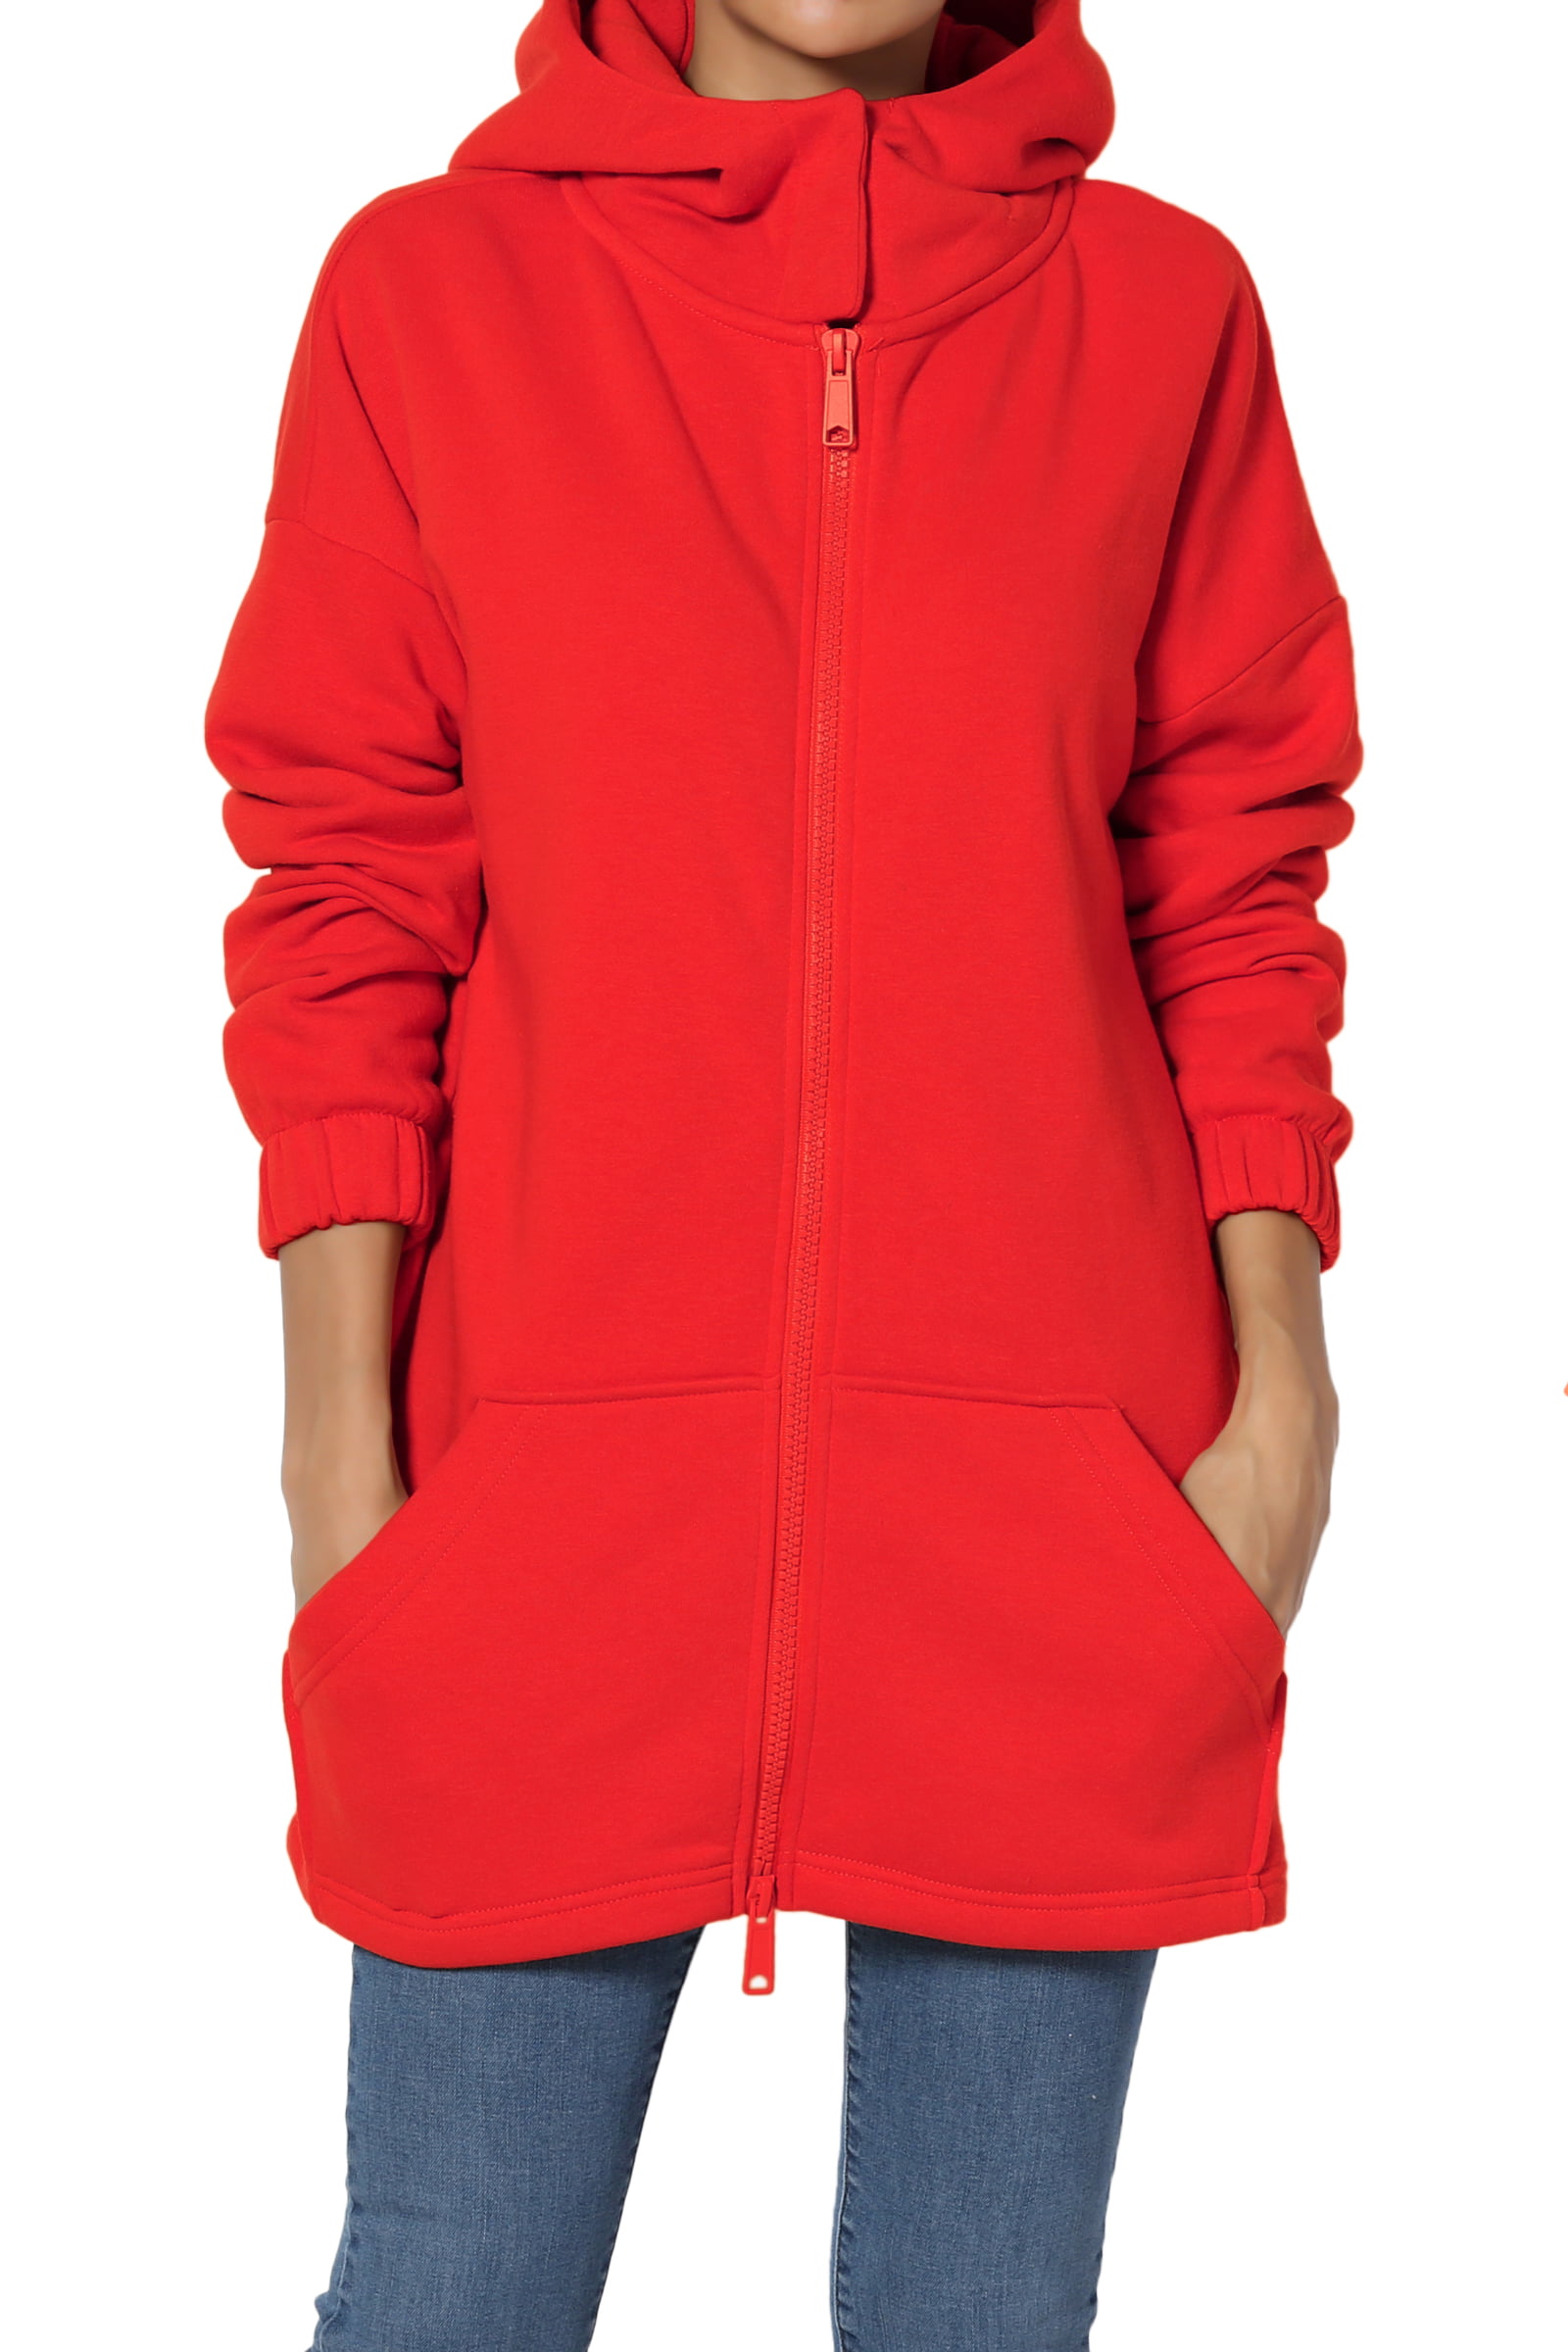 Themogan Women S S~3x Funnel Neck Pocket Zipper Up Oversized Hoodie Fleece Jacket